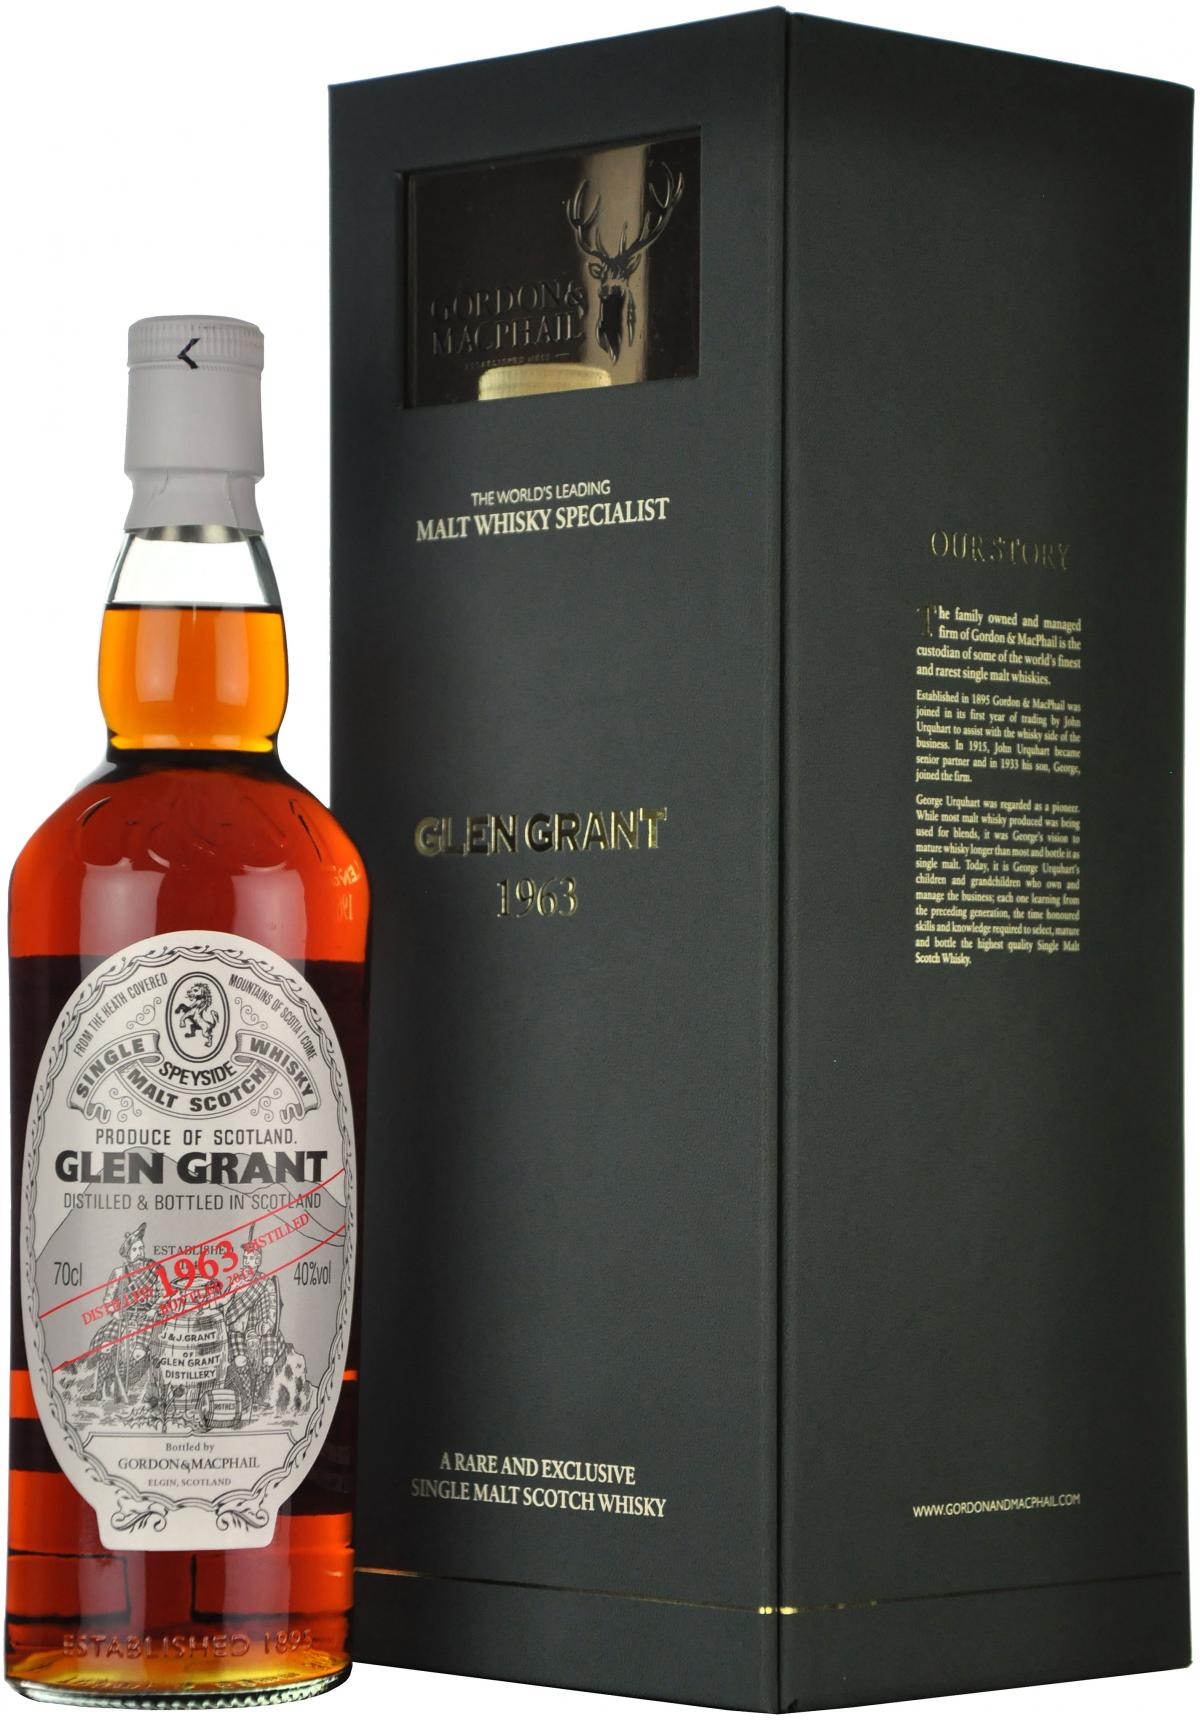 glen grant distilled 1963 gordon and macphail speyside single malt scotch whisky whiskey